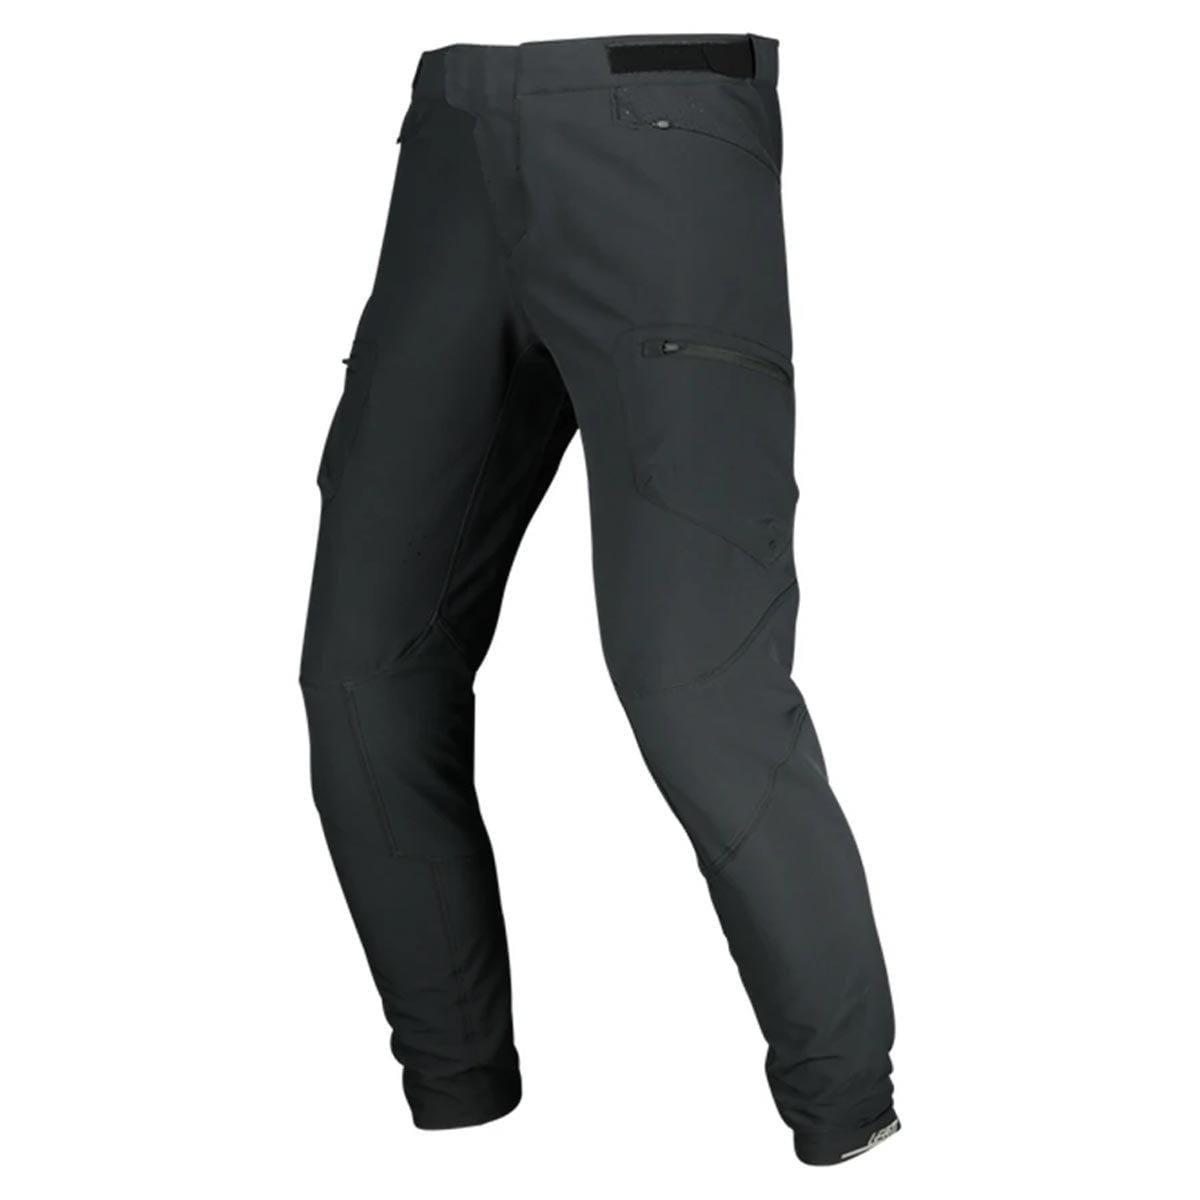 Leatt Men's MTB Enduro 3.0 Pants Black / XS Apparel - Clothing - Men's Tights & Pants - Mountain